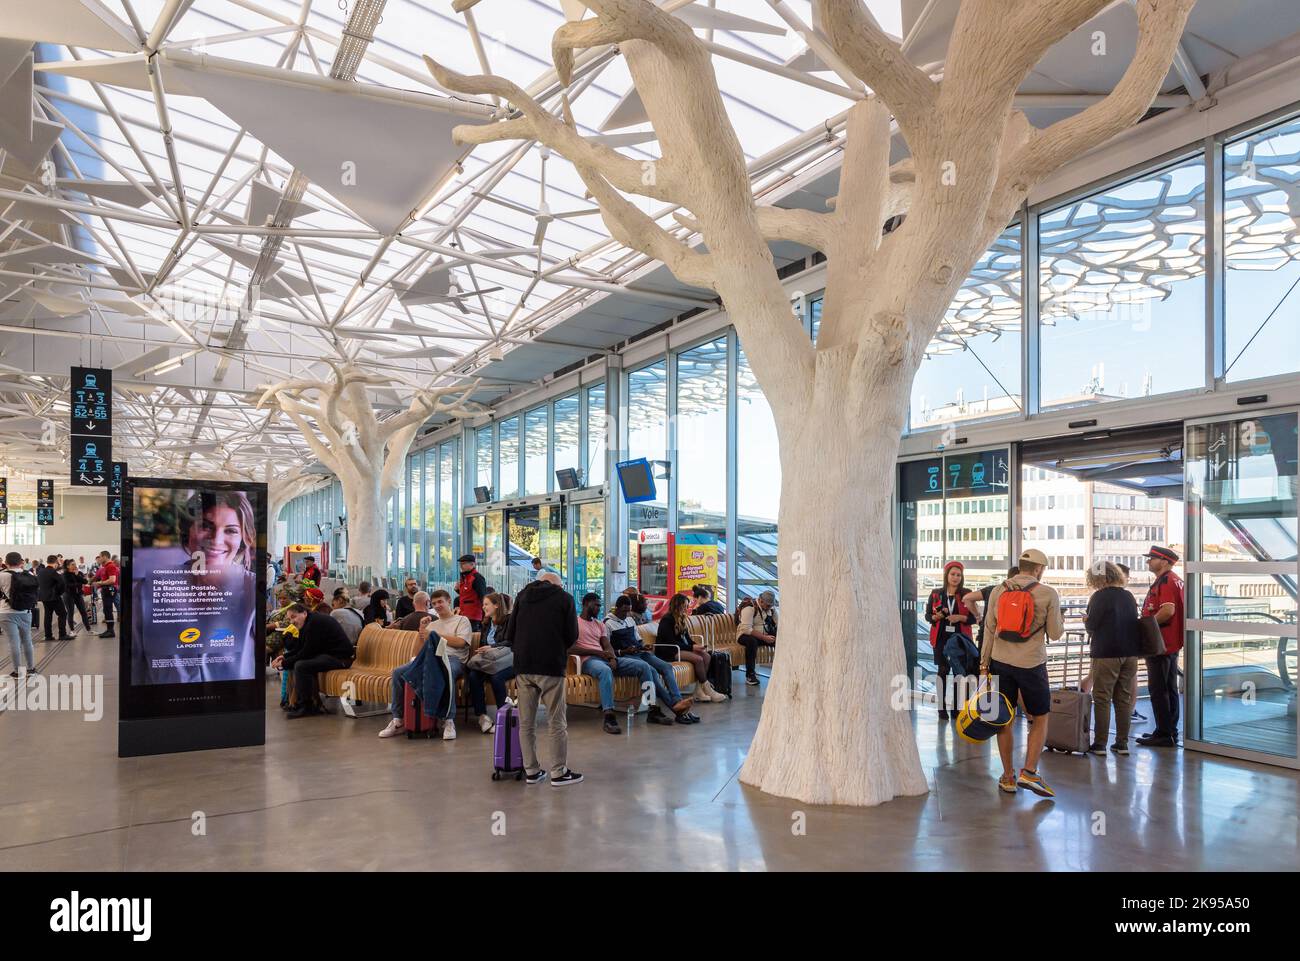 Les voyageurs attendent un train dans le hall de la mezzanine de la gare SNCF de Nantes, en France, conçu par Rudy Ricciotti et doté de piliers en forme d'arbre. Banque D'Images